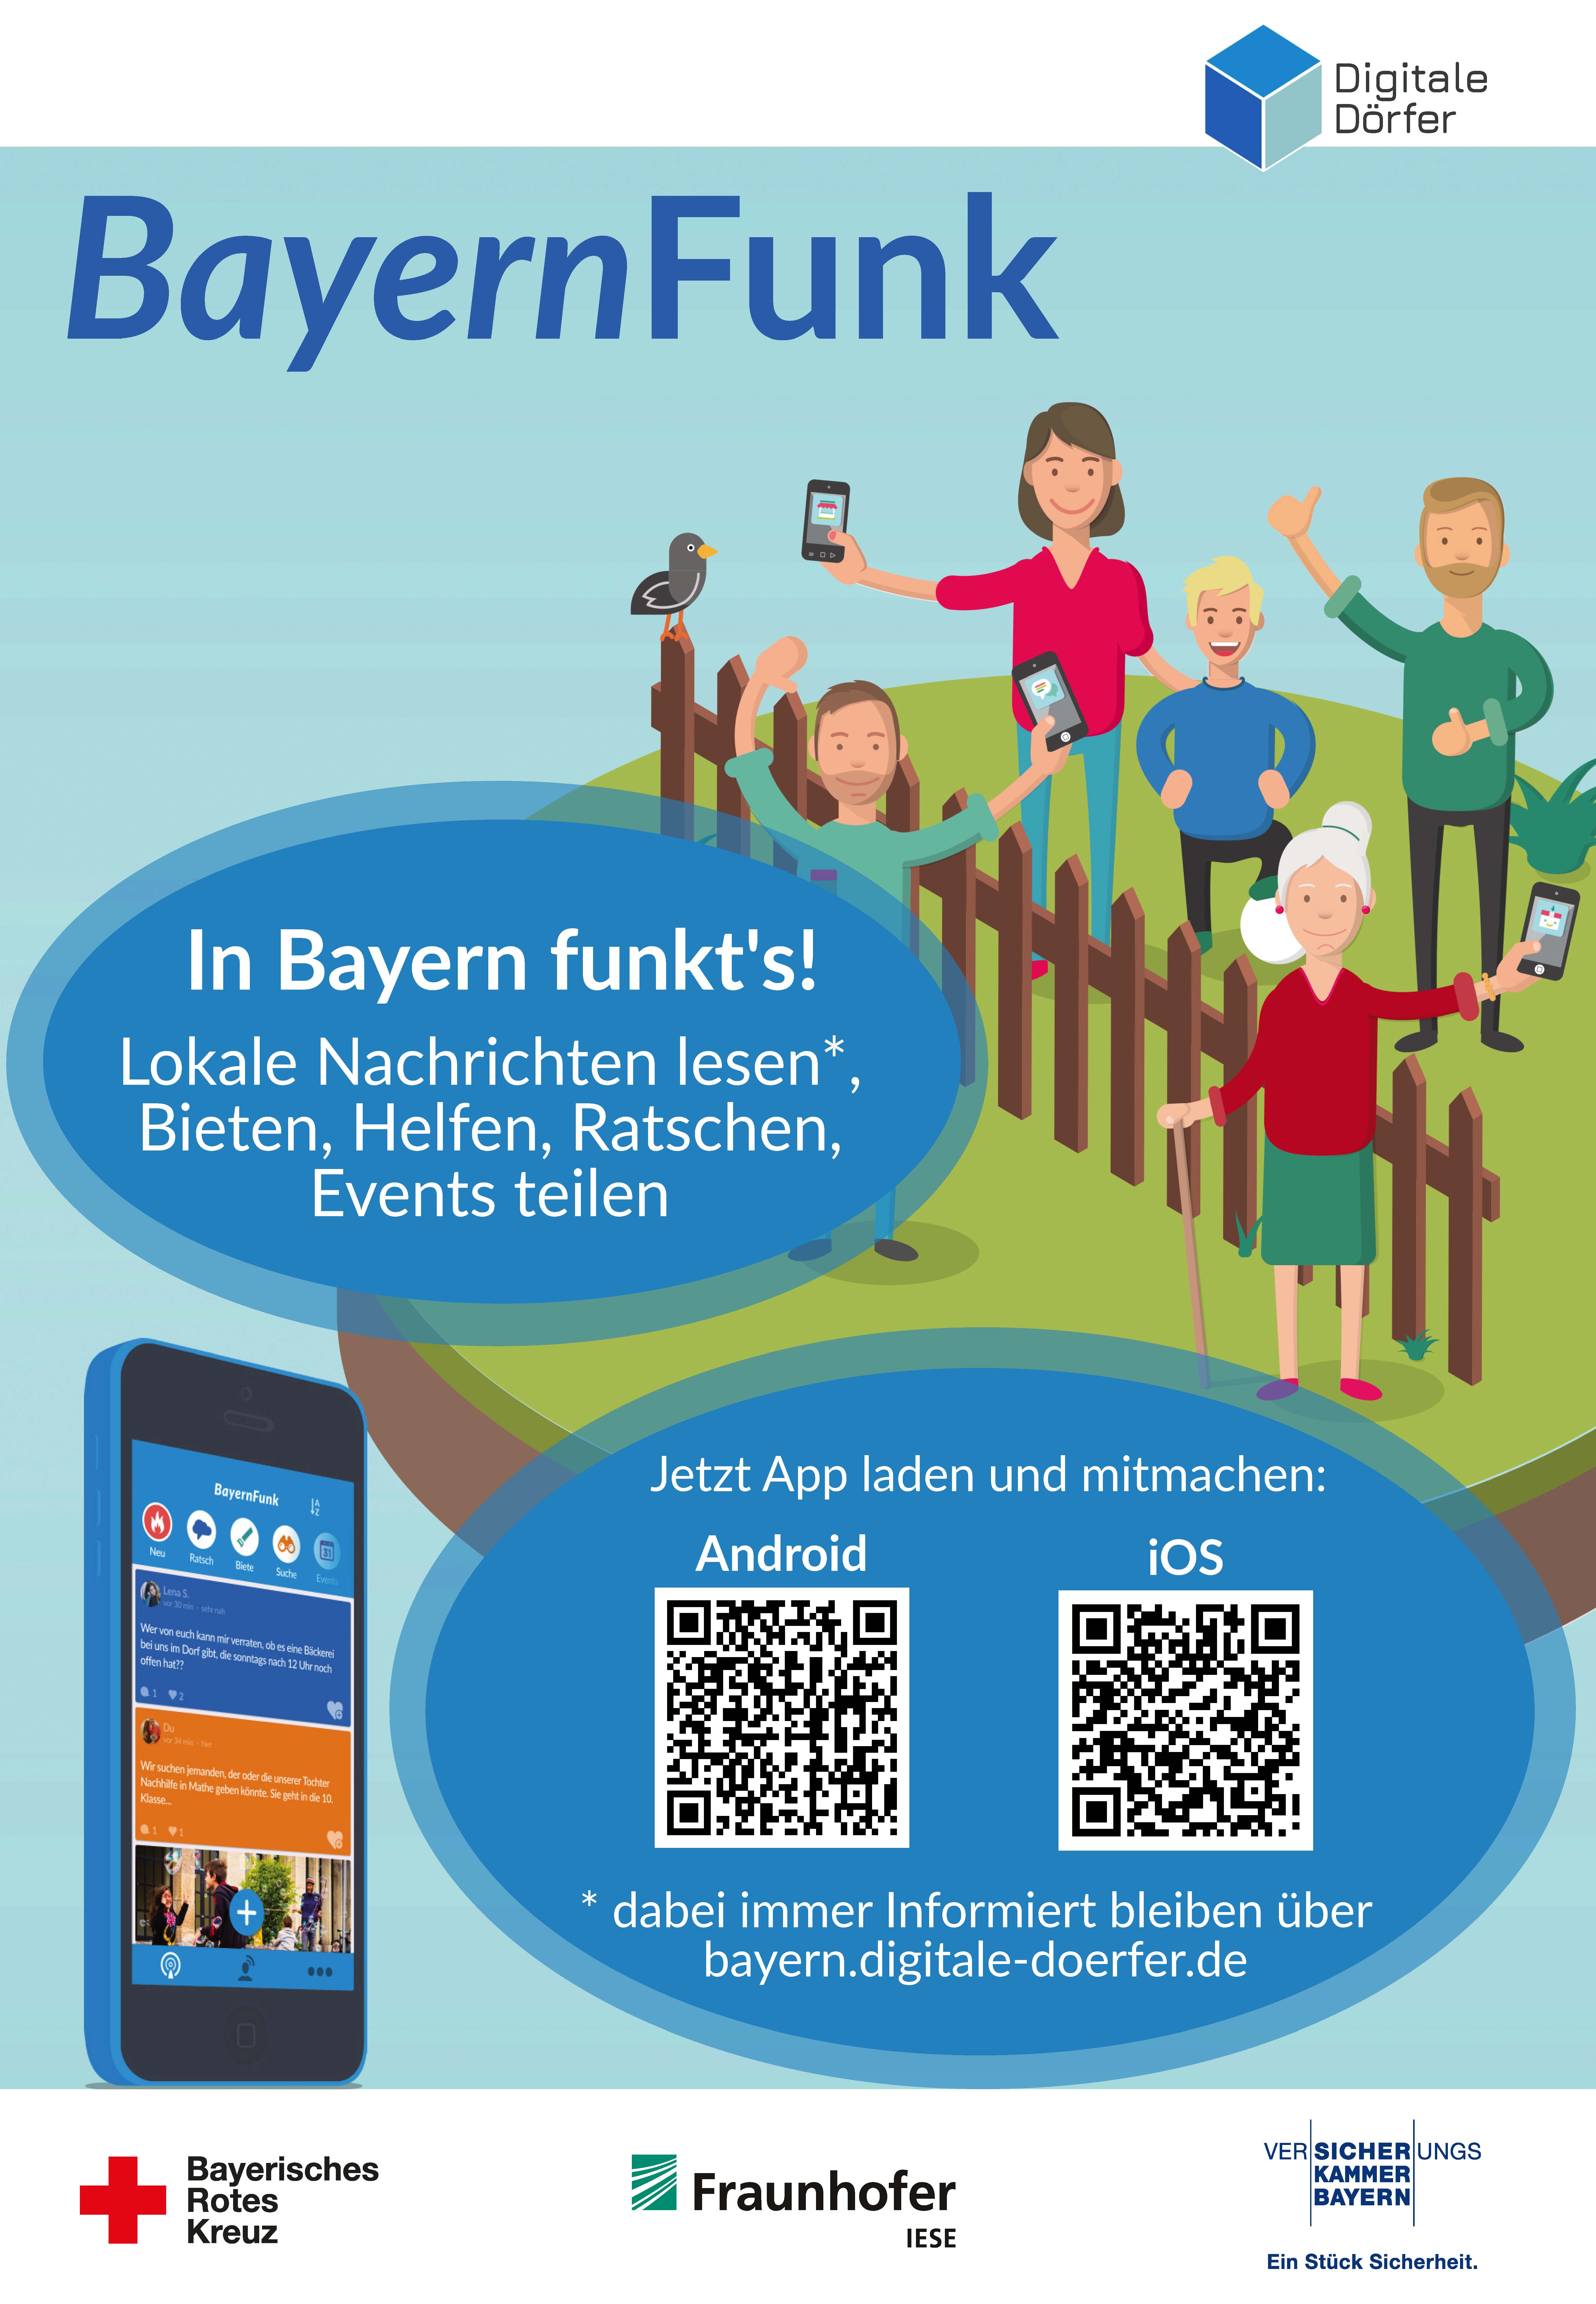 Das offizielle Plakat von Bayernfunk